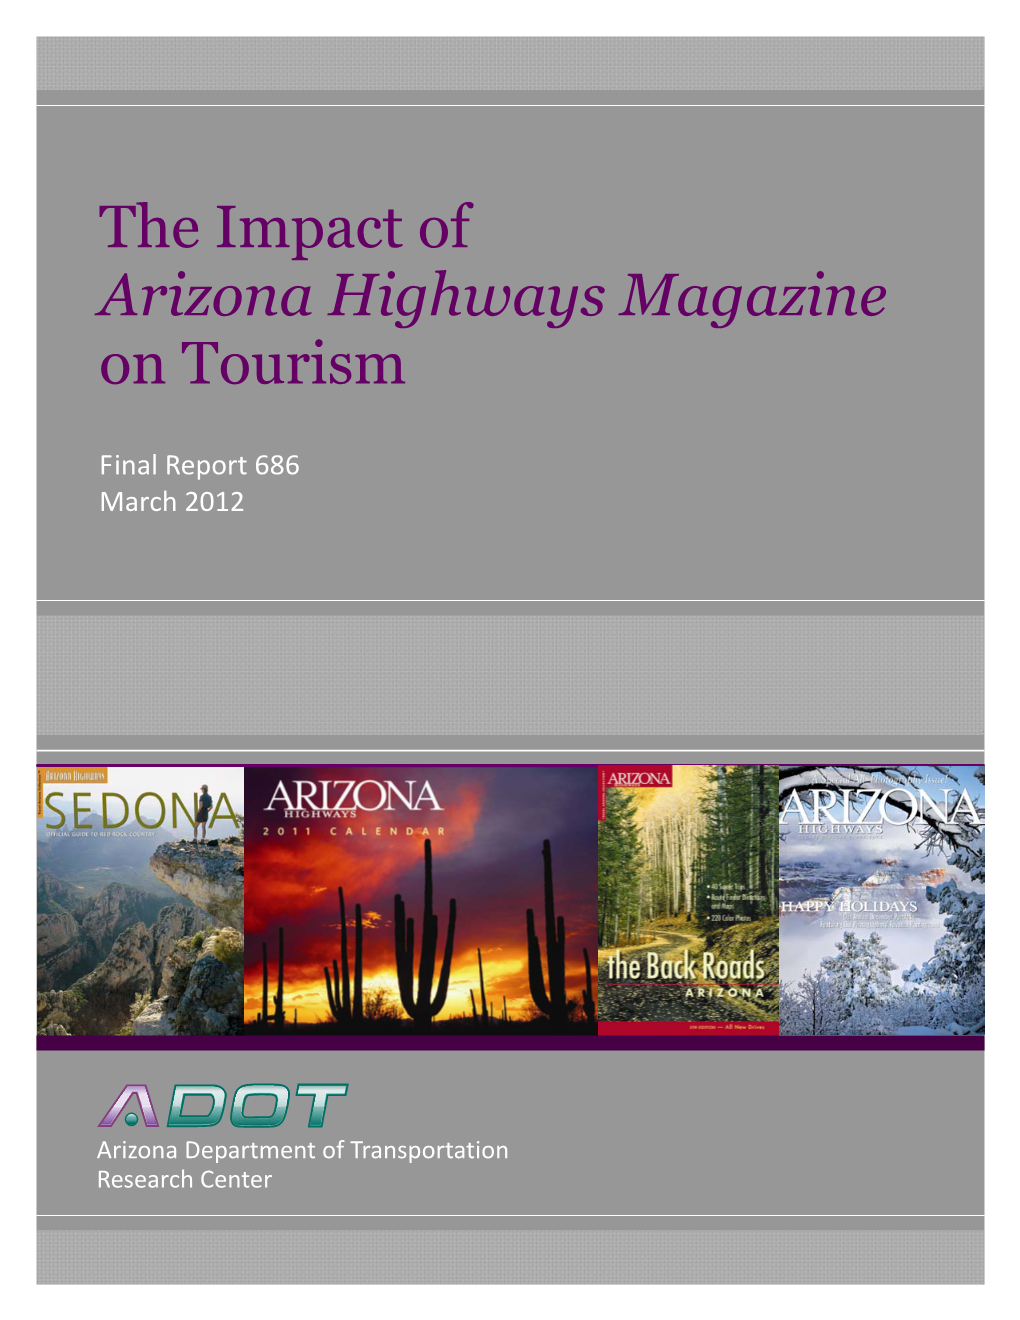 The Impact of Arizona Highways Magazine on Tourism